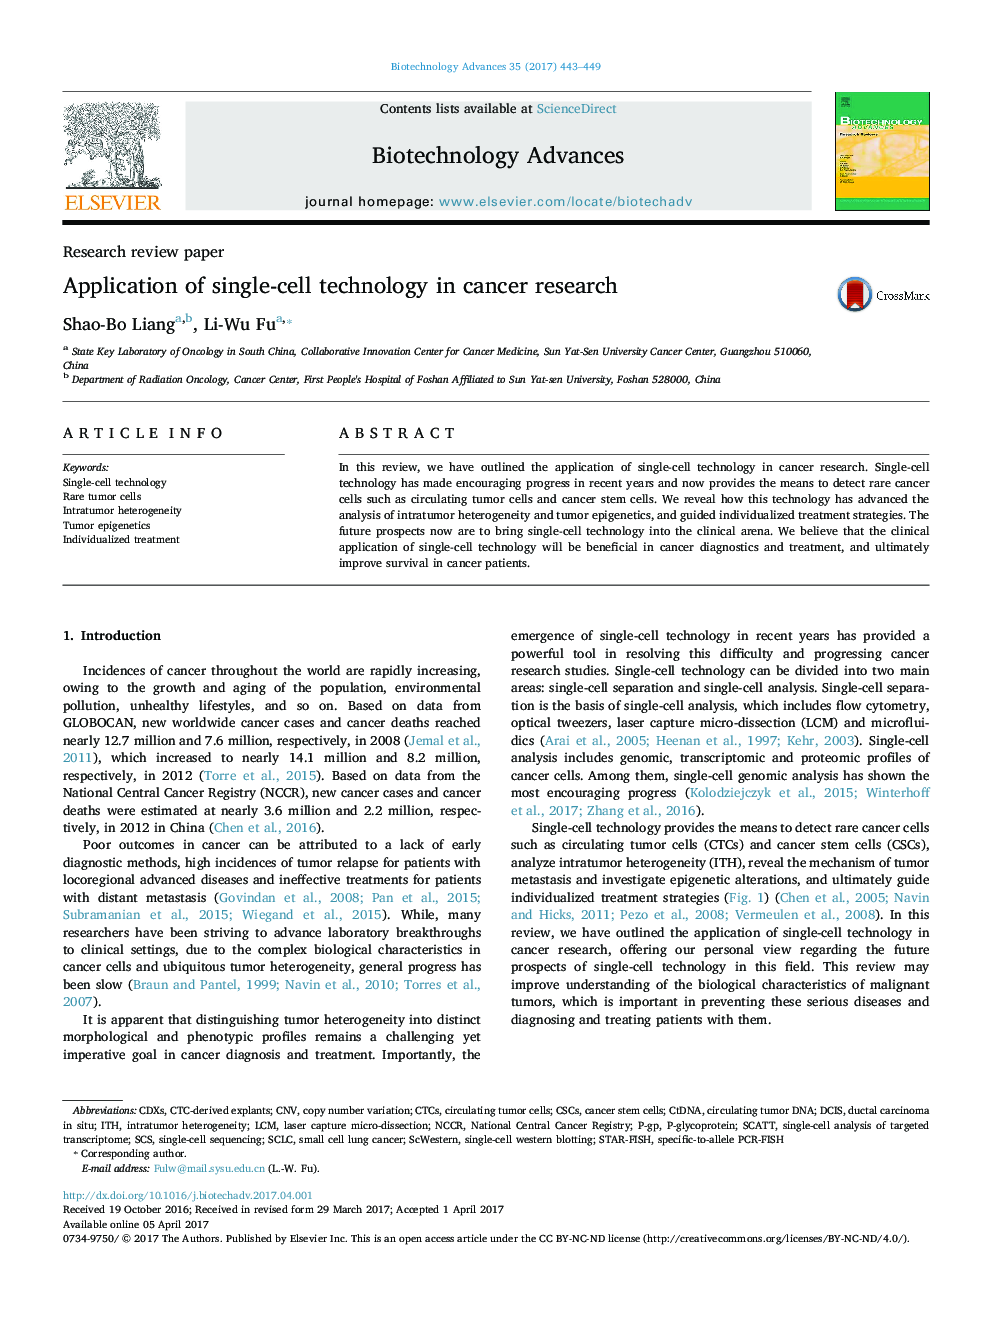 مقاله پژوهشی کاربرد فناوری تک سلولی در تحقیقات سرطان